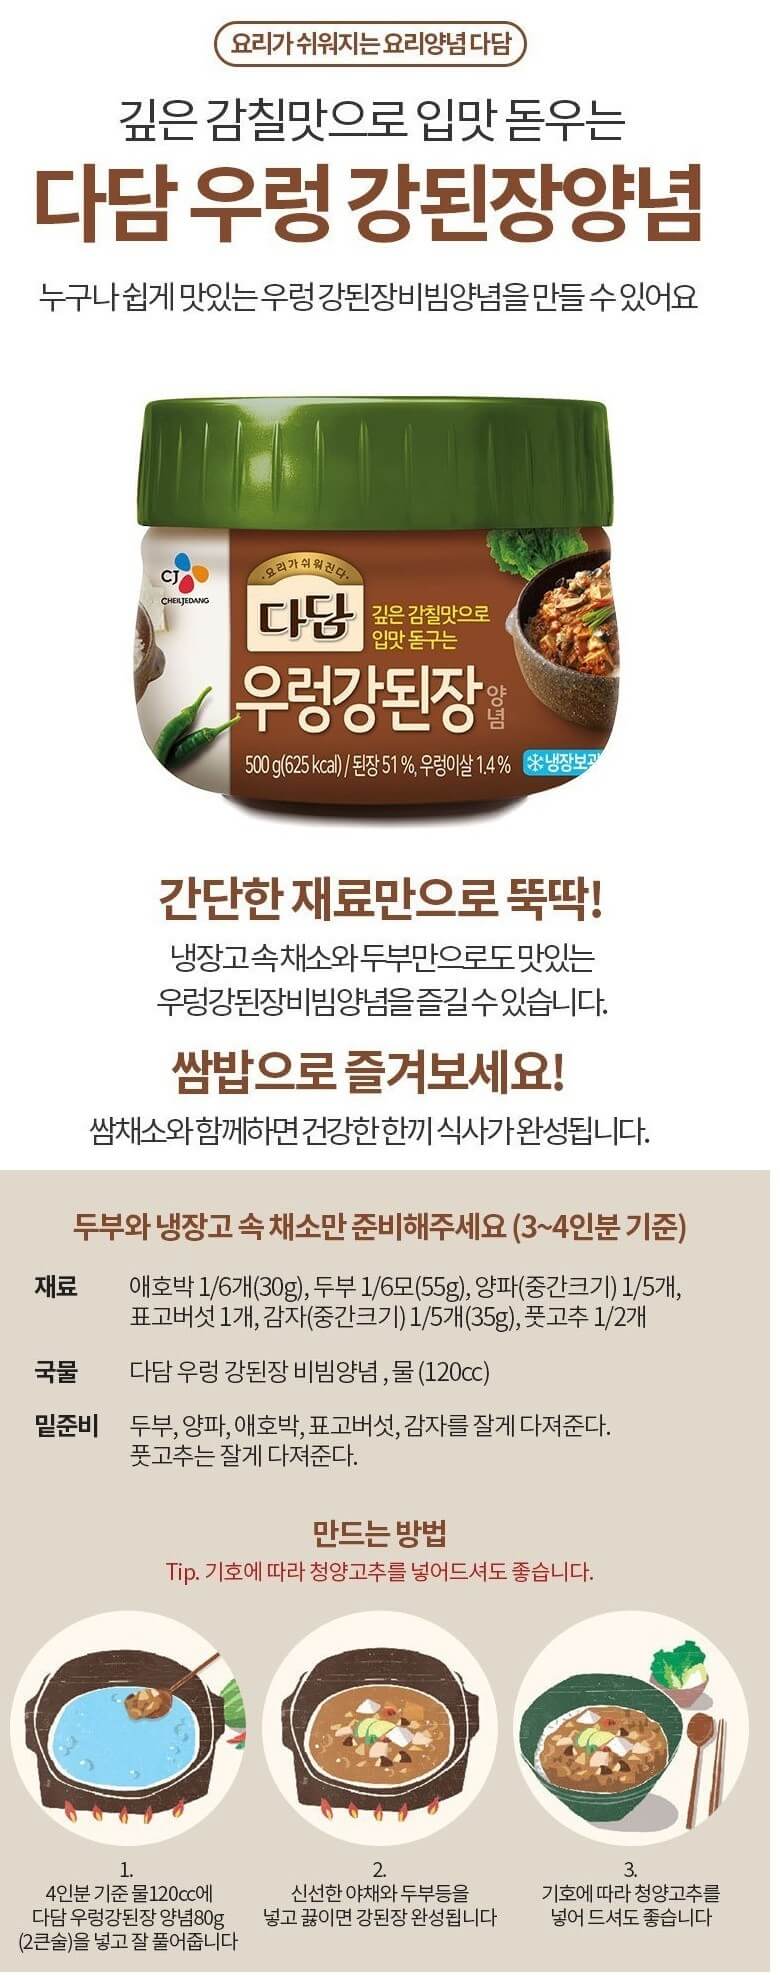 韓國食品-[CJ] Dadam Soybean Paste with Snails Sauce 500g